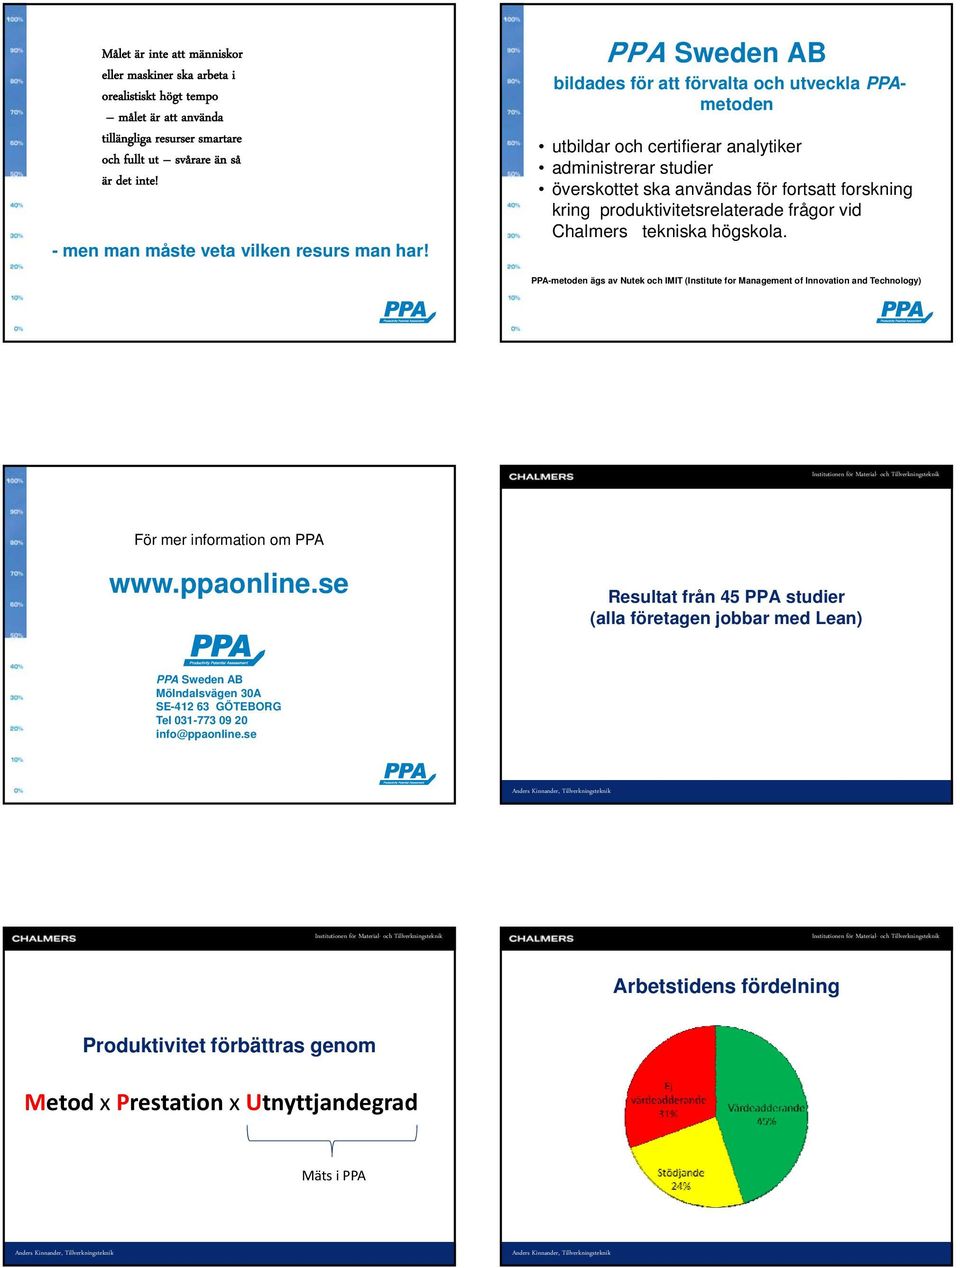 PPA Sweden AB bildades för att förvalta och utveckla PPAmetoden utbildar och certifierar analytiker administrerar studier överskottet ska användas för fortsatt forskning kring